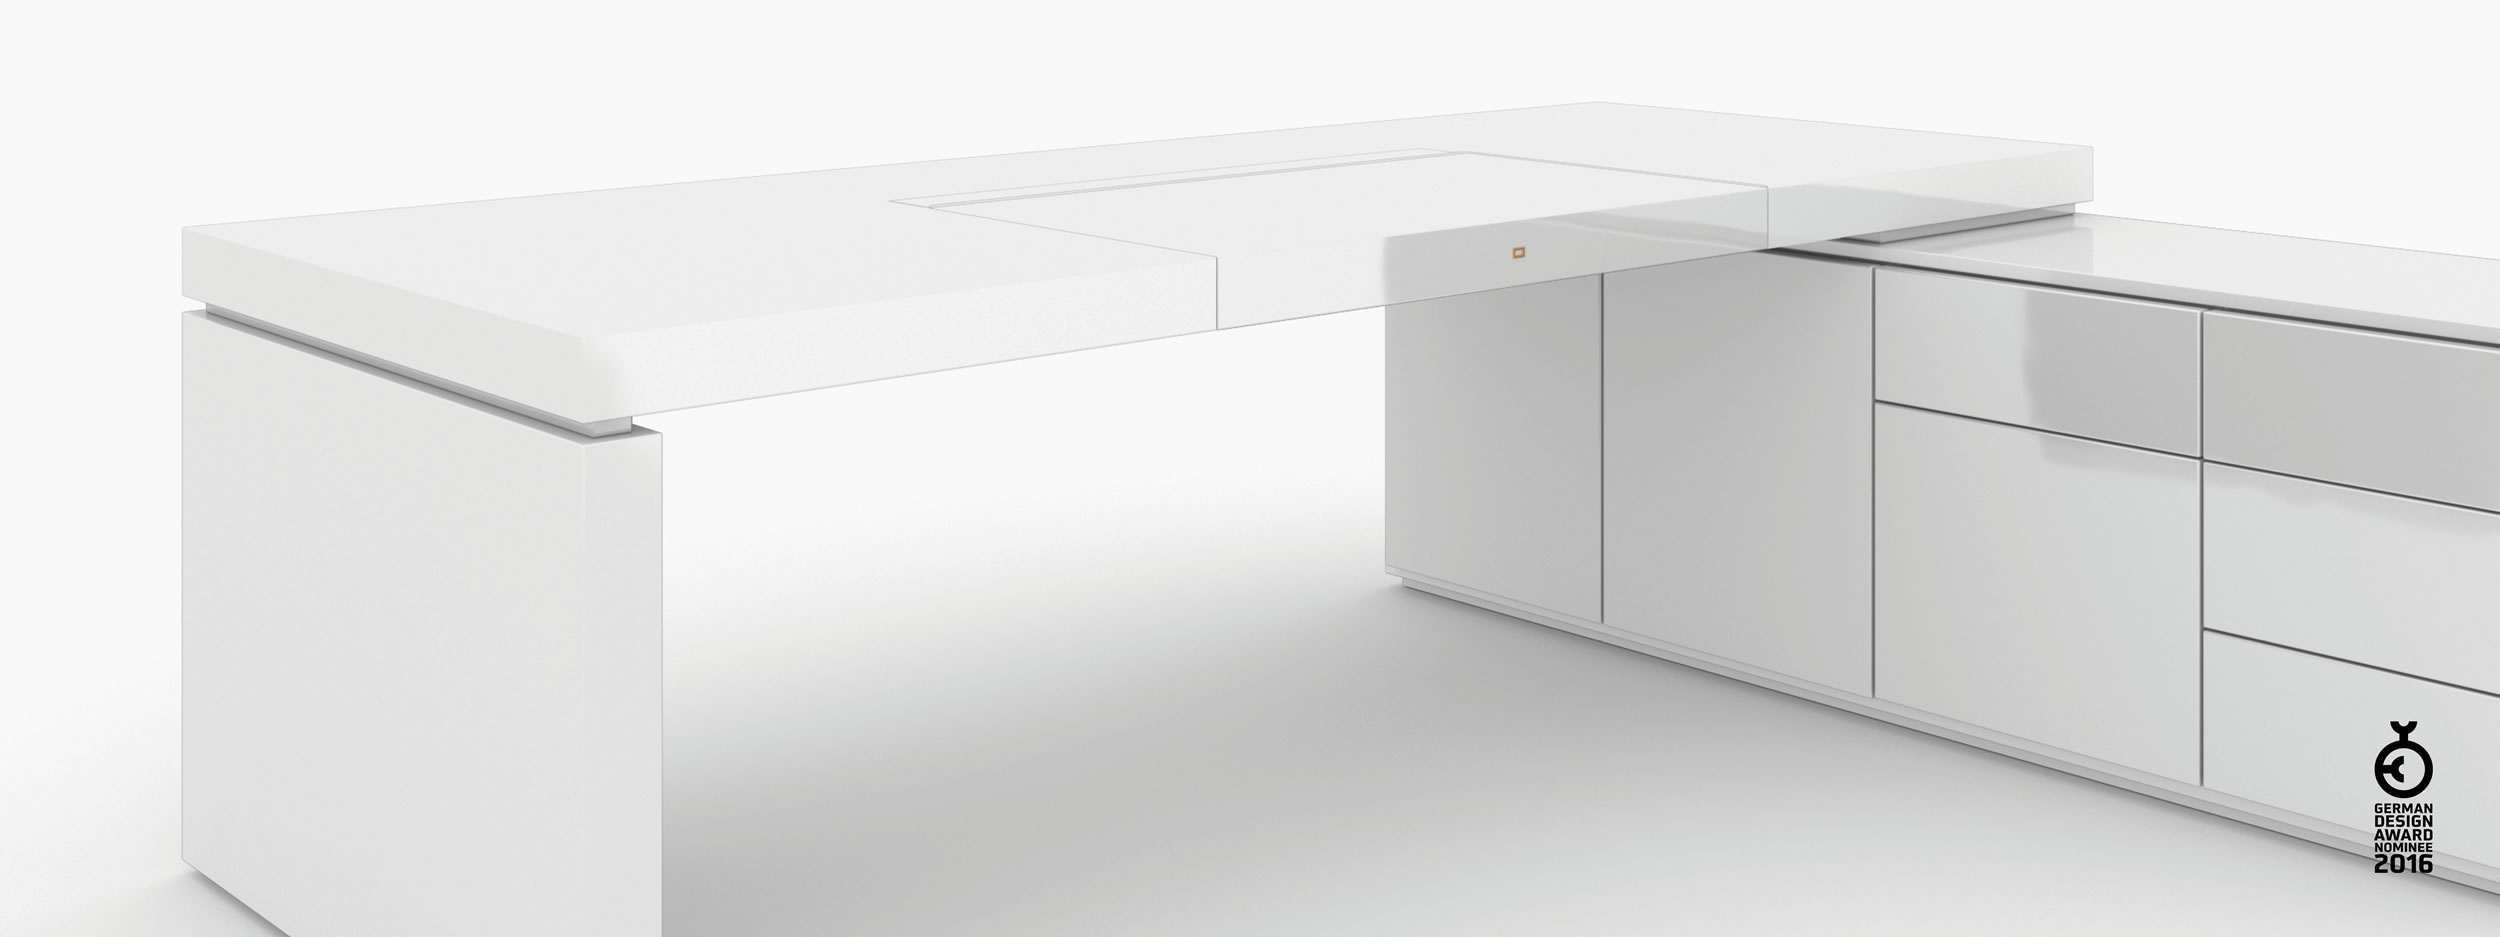 Schreibtisch scheiben und quader weiss white room Chefzimmer sculptural furniture Schreibtische FS 94 FELIX SCHWAKE RECHTECK